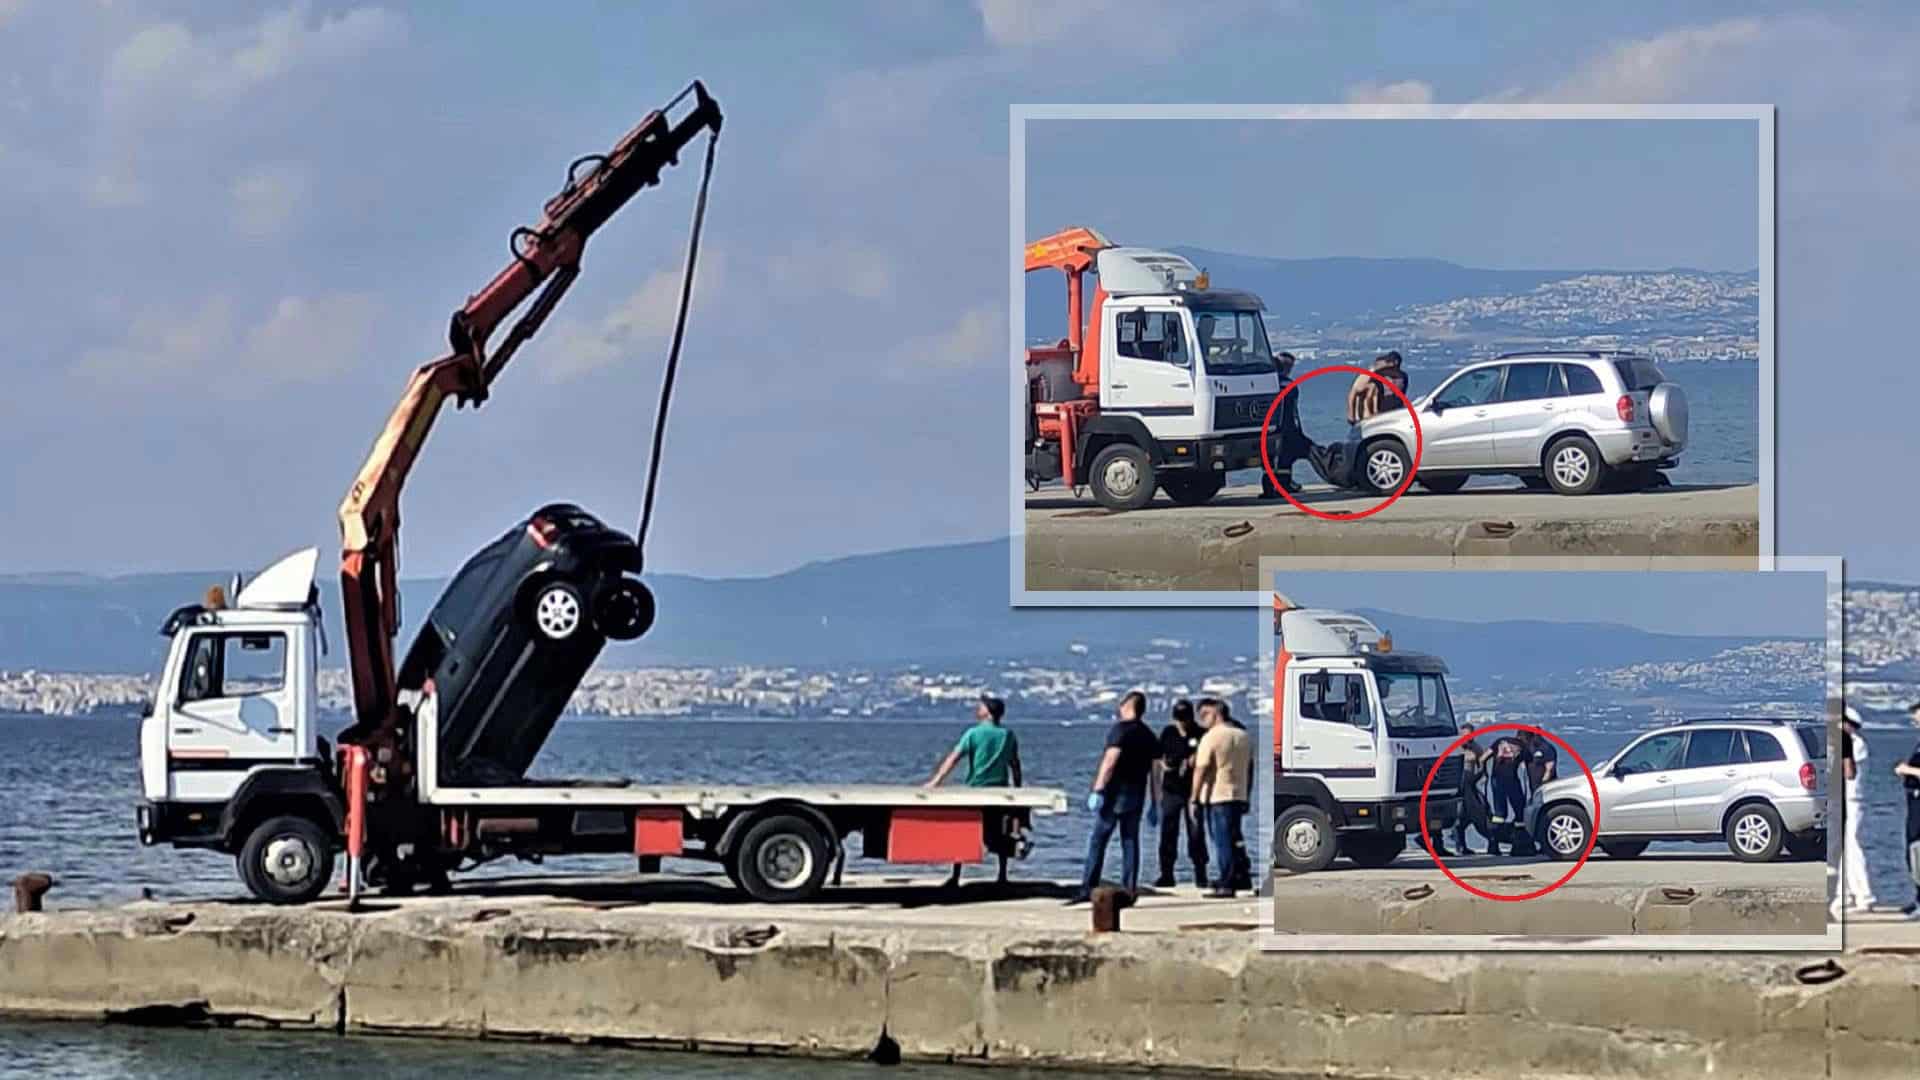 Θεσσαλονίκη: Μητέρα και γιος αυτοκτόνησαν μαζί πέφτοντας με το αυτοκίνητο στη θάλασσα